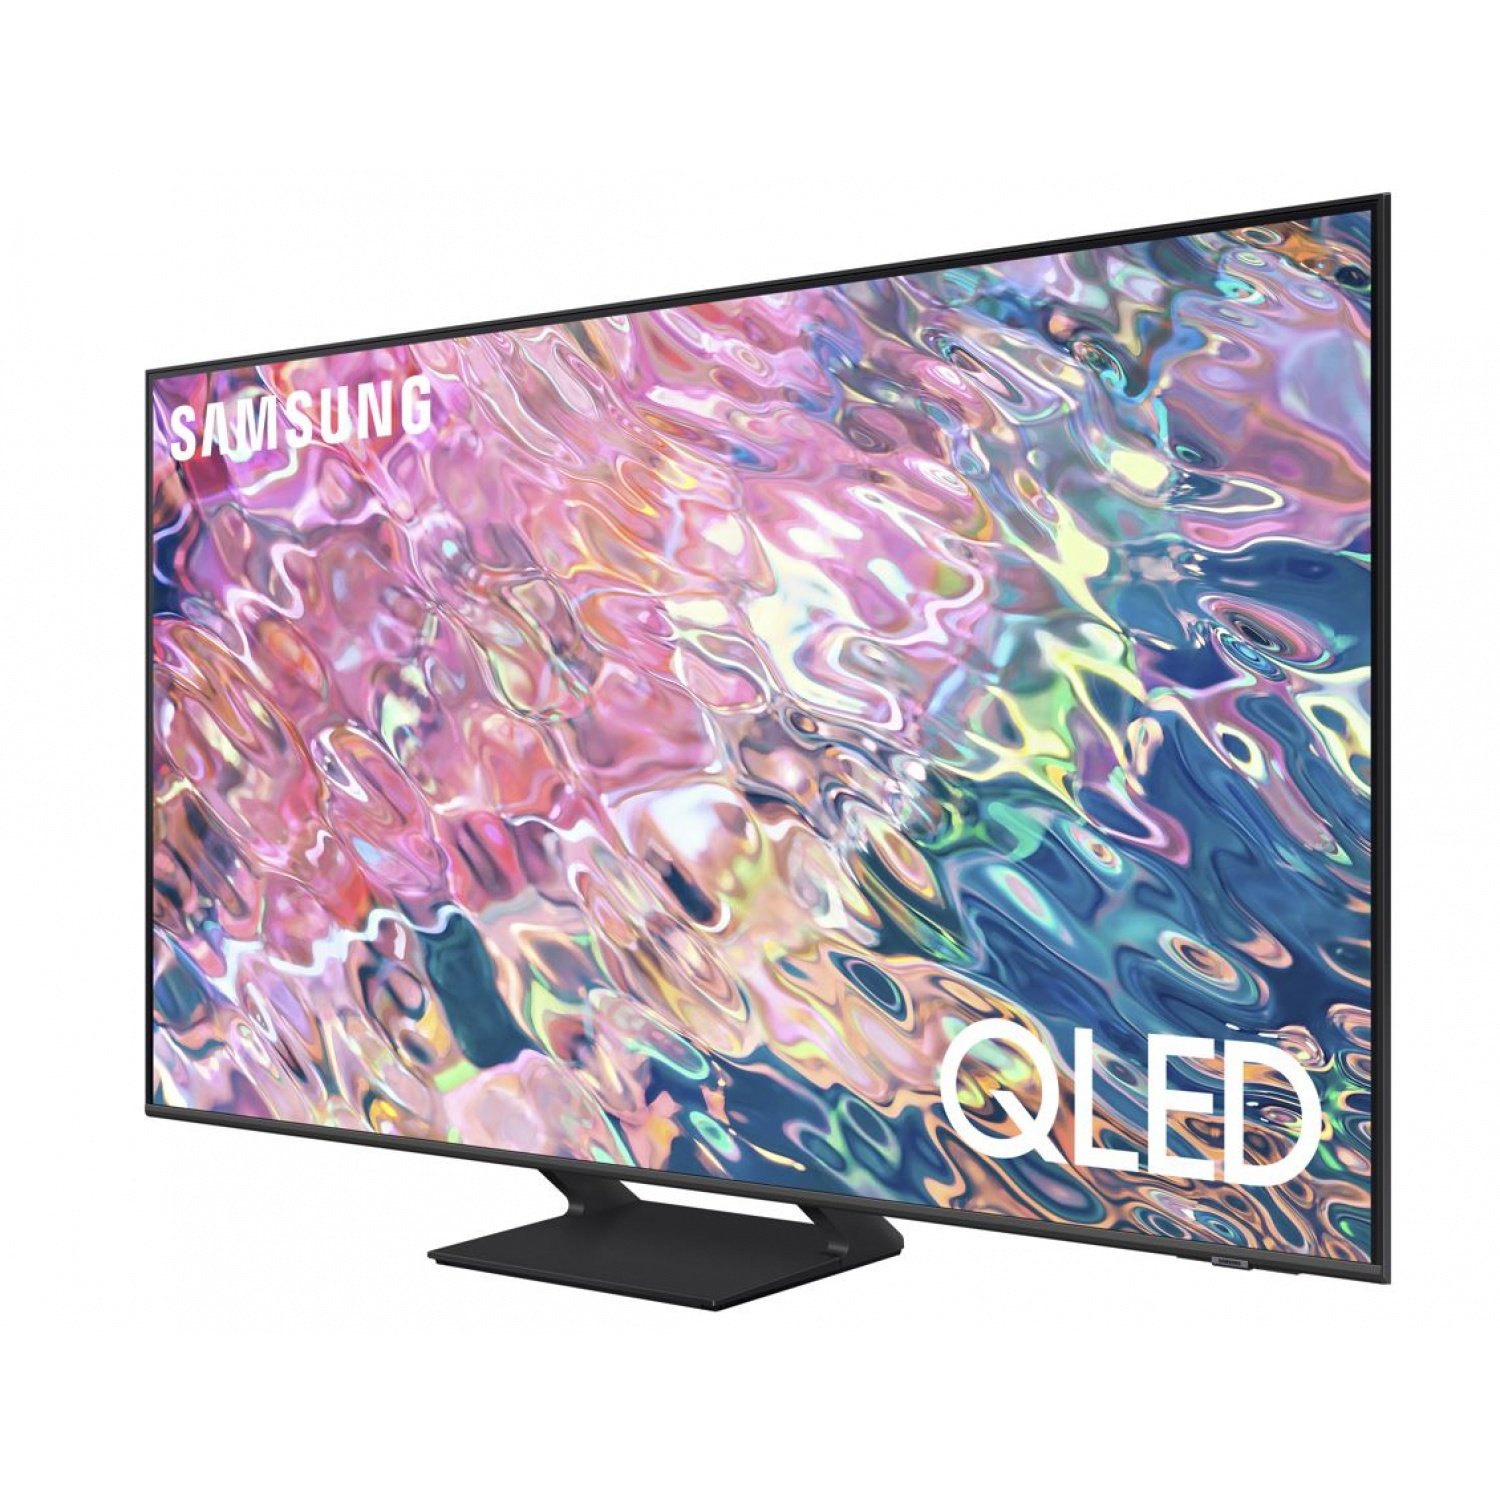 SAMSUNG QLED TV ขนาด 55 นิ้ว รุ่น QA55Q65BAKXXT  สีดำ